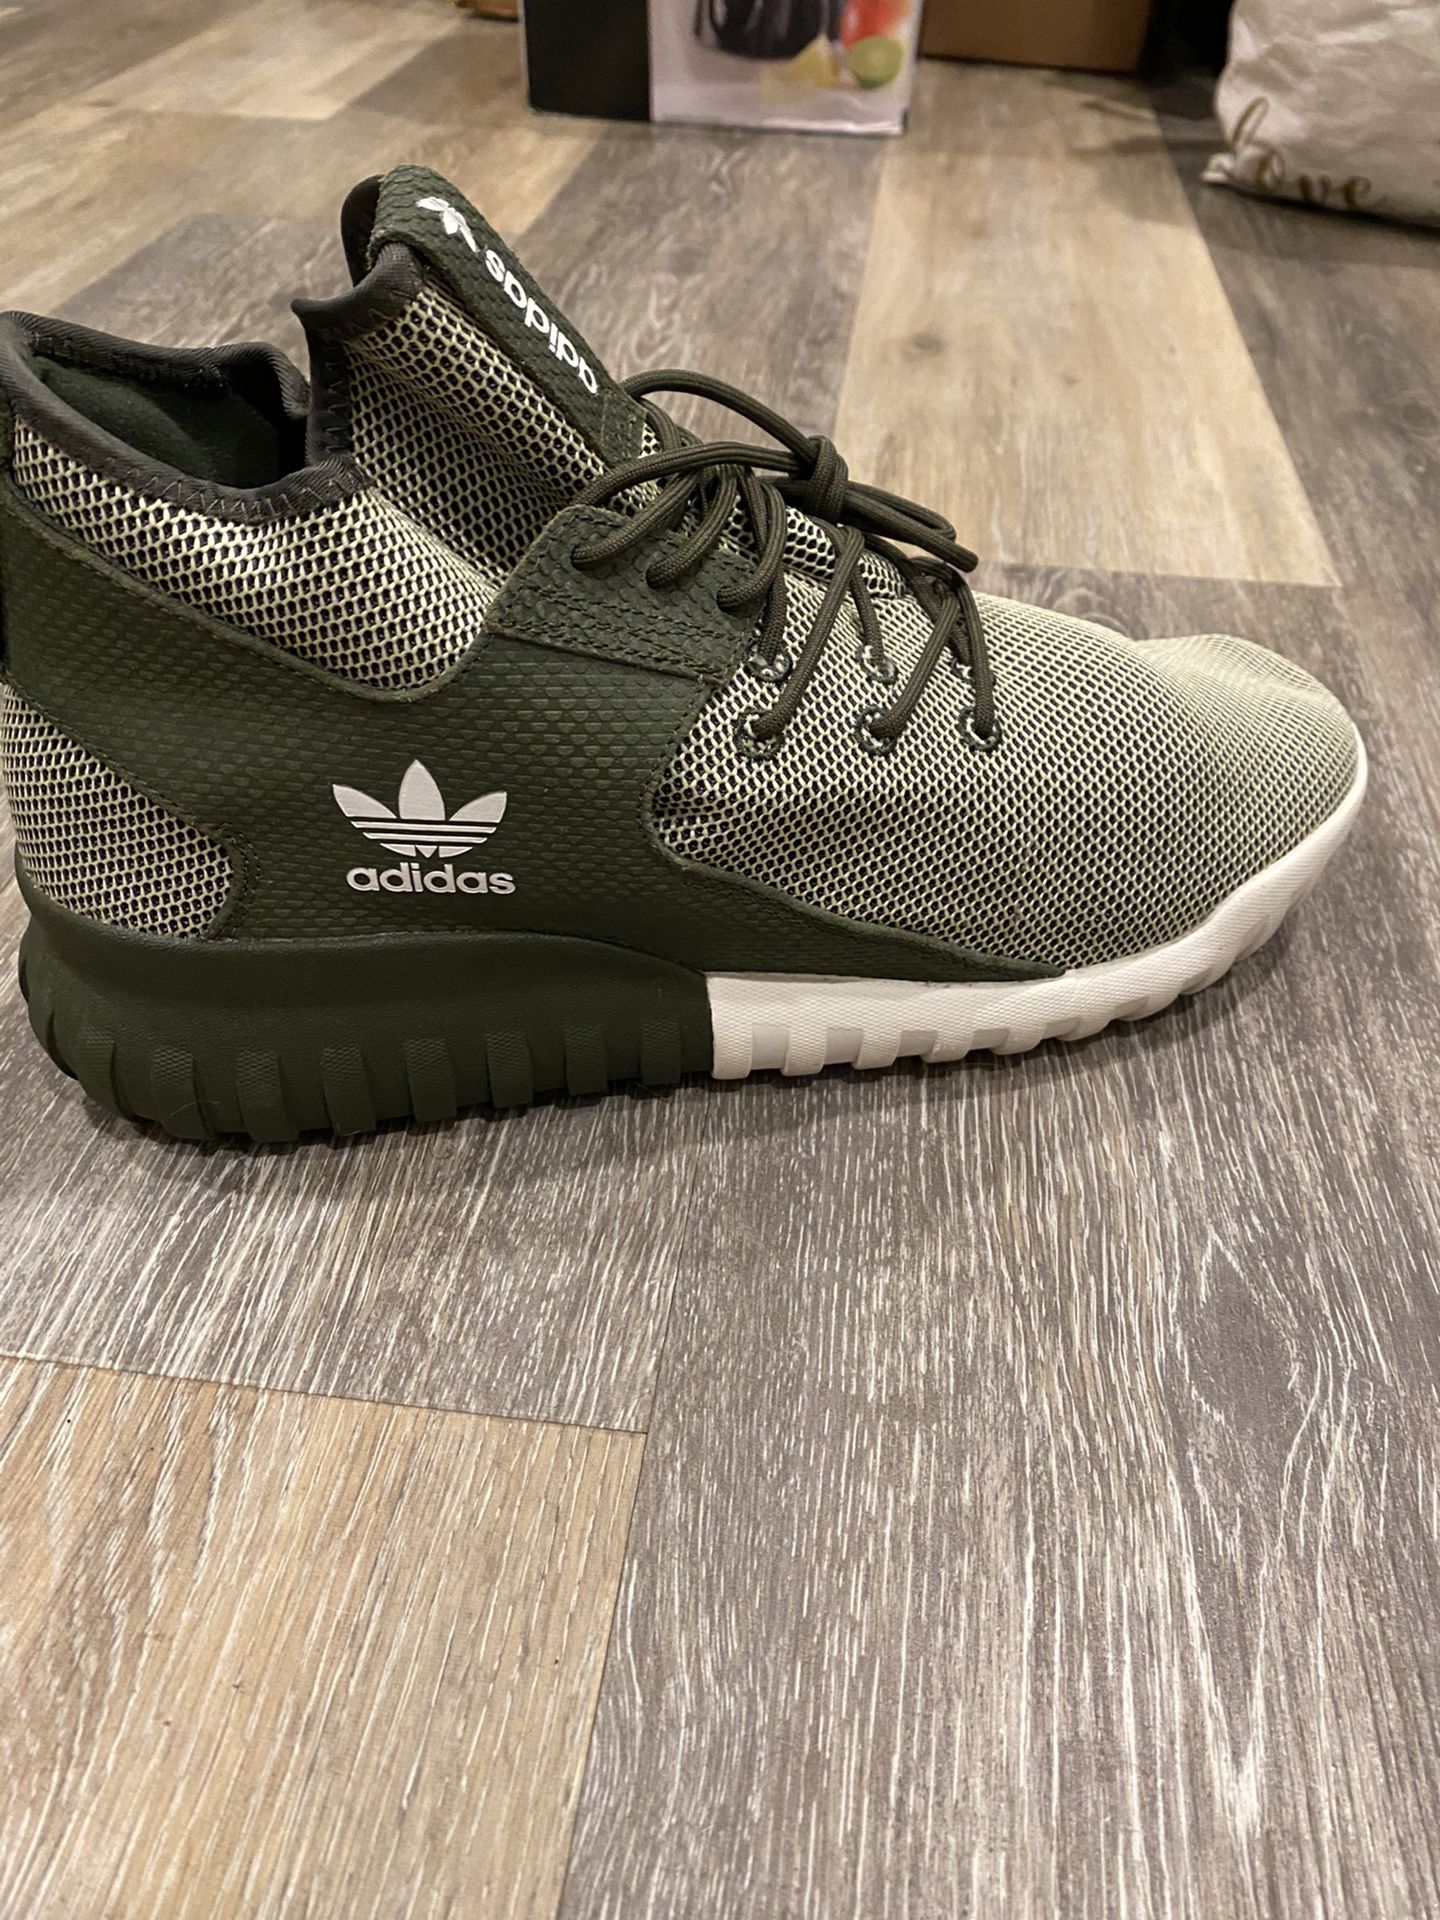 Adidas Tubular Shoes